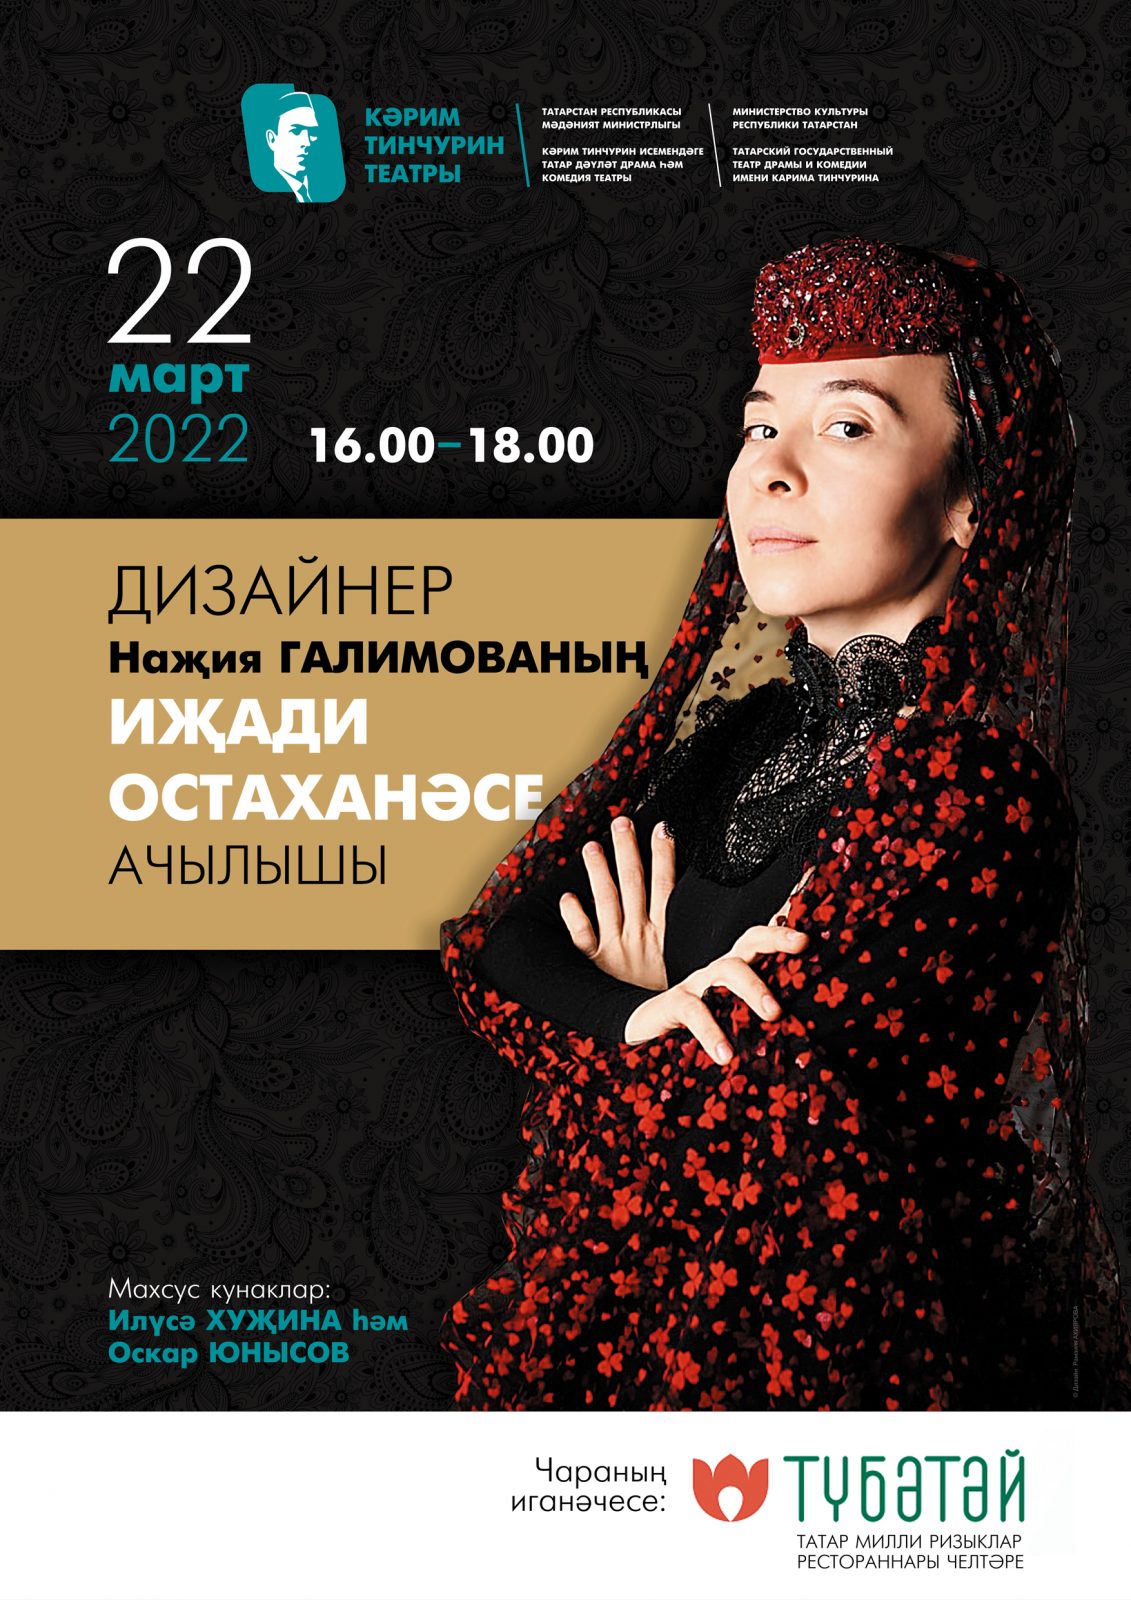 Открытие творческой студии Нажии Галимовой в Тинчуринском театре